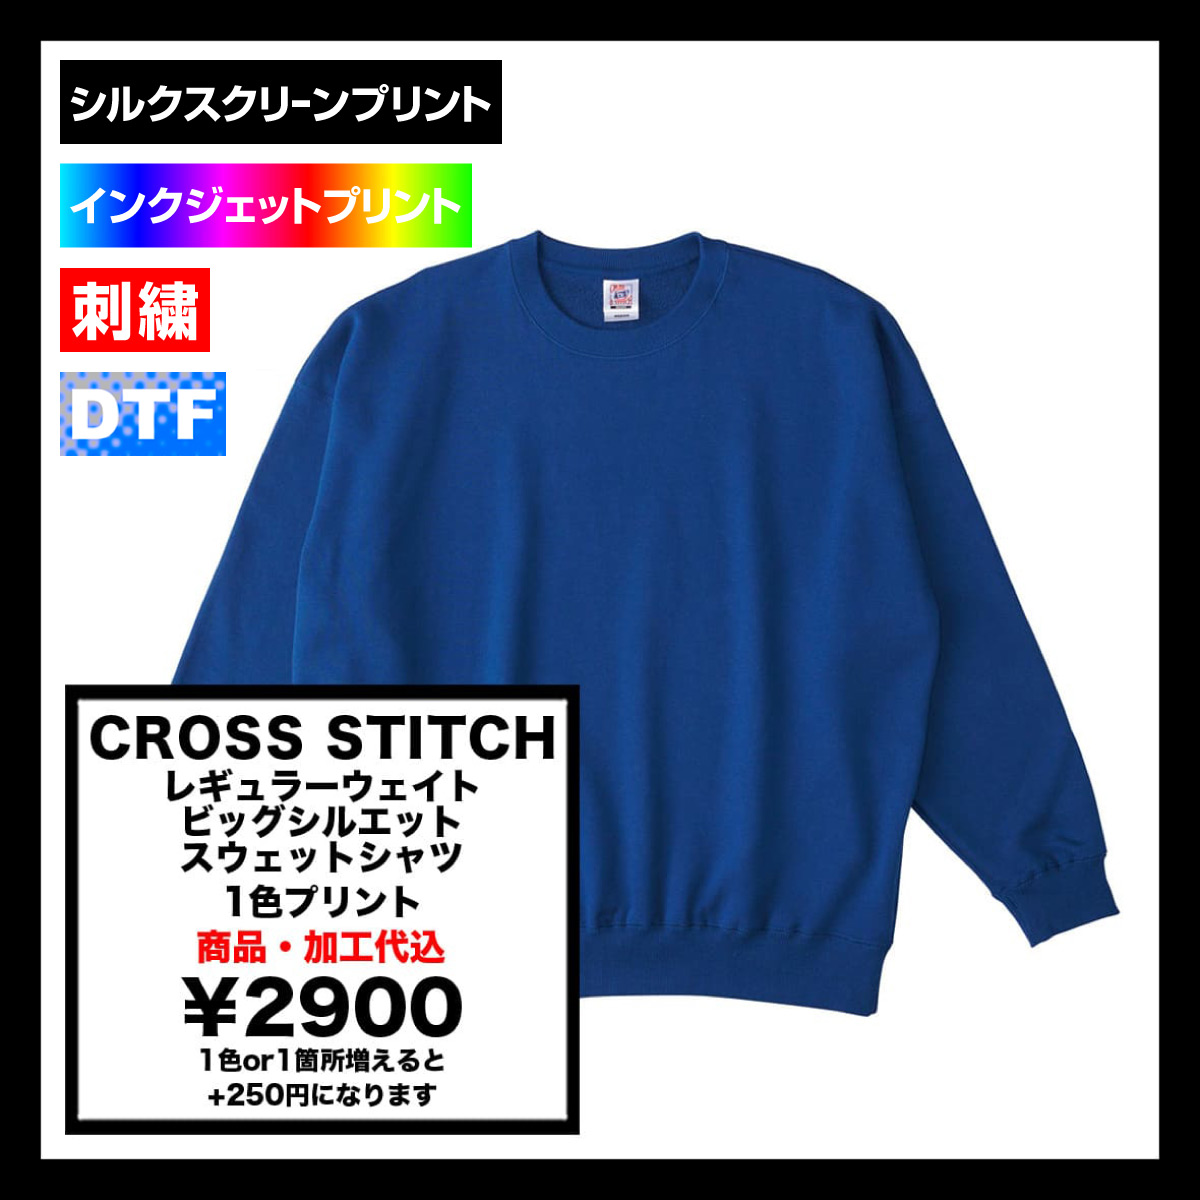 CROSS STITCH クロススティッチ 10.0 oz レギュラーウェイト ビッグシルエット スウェットシャツ (品番SB2280)